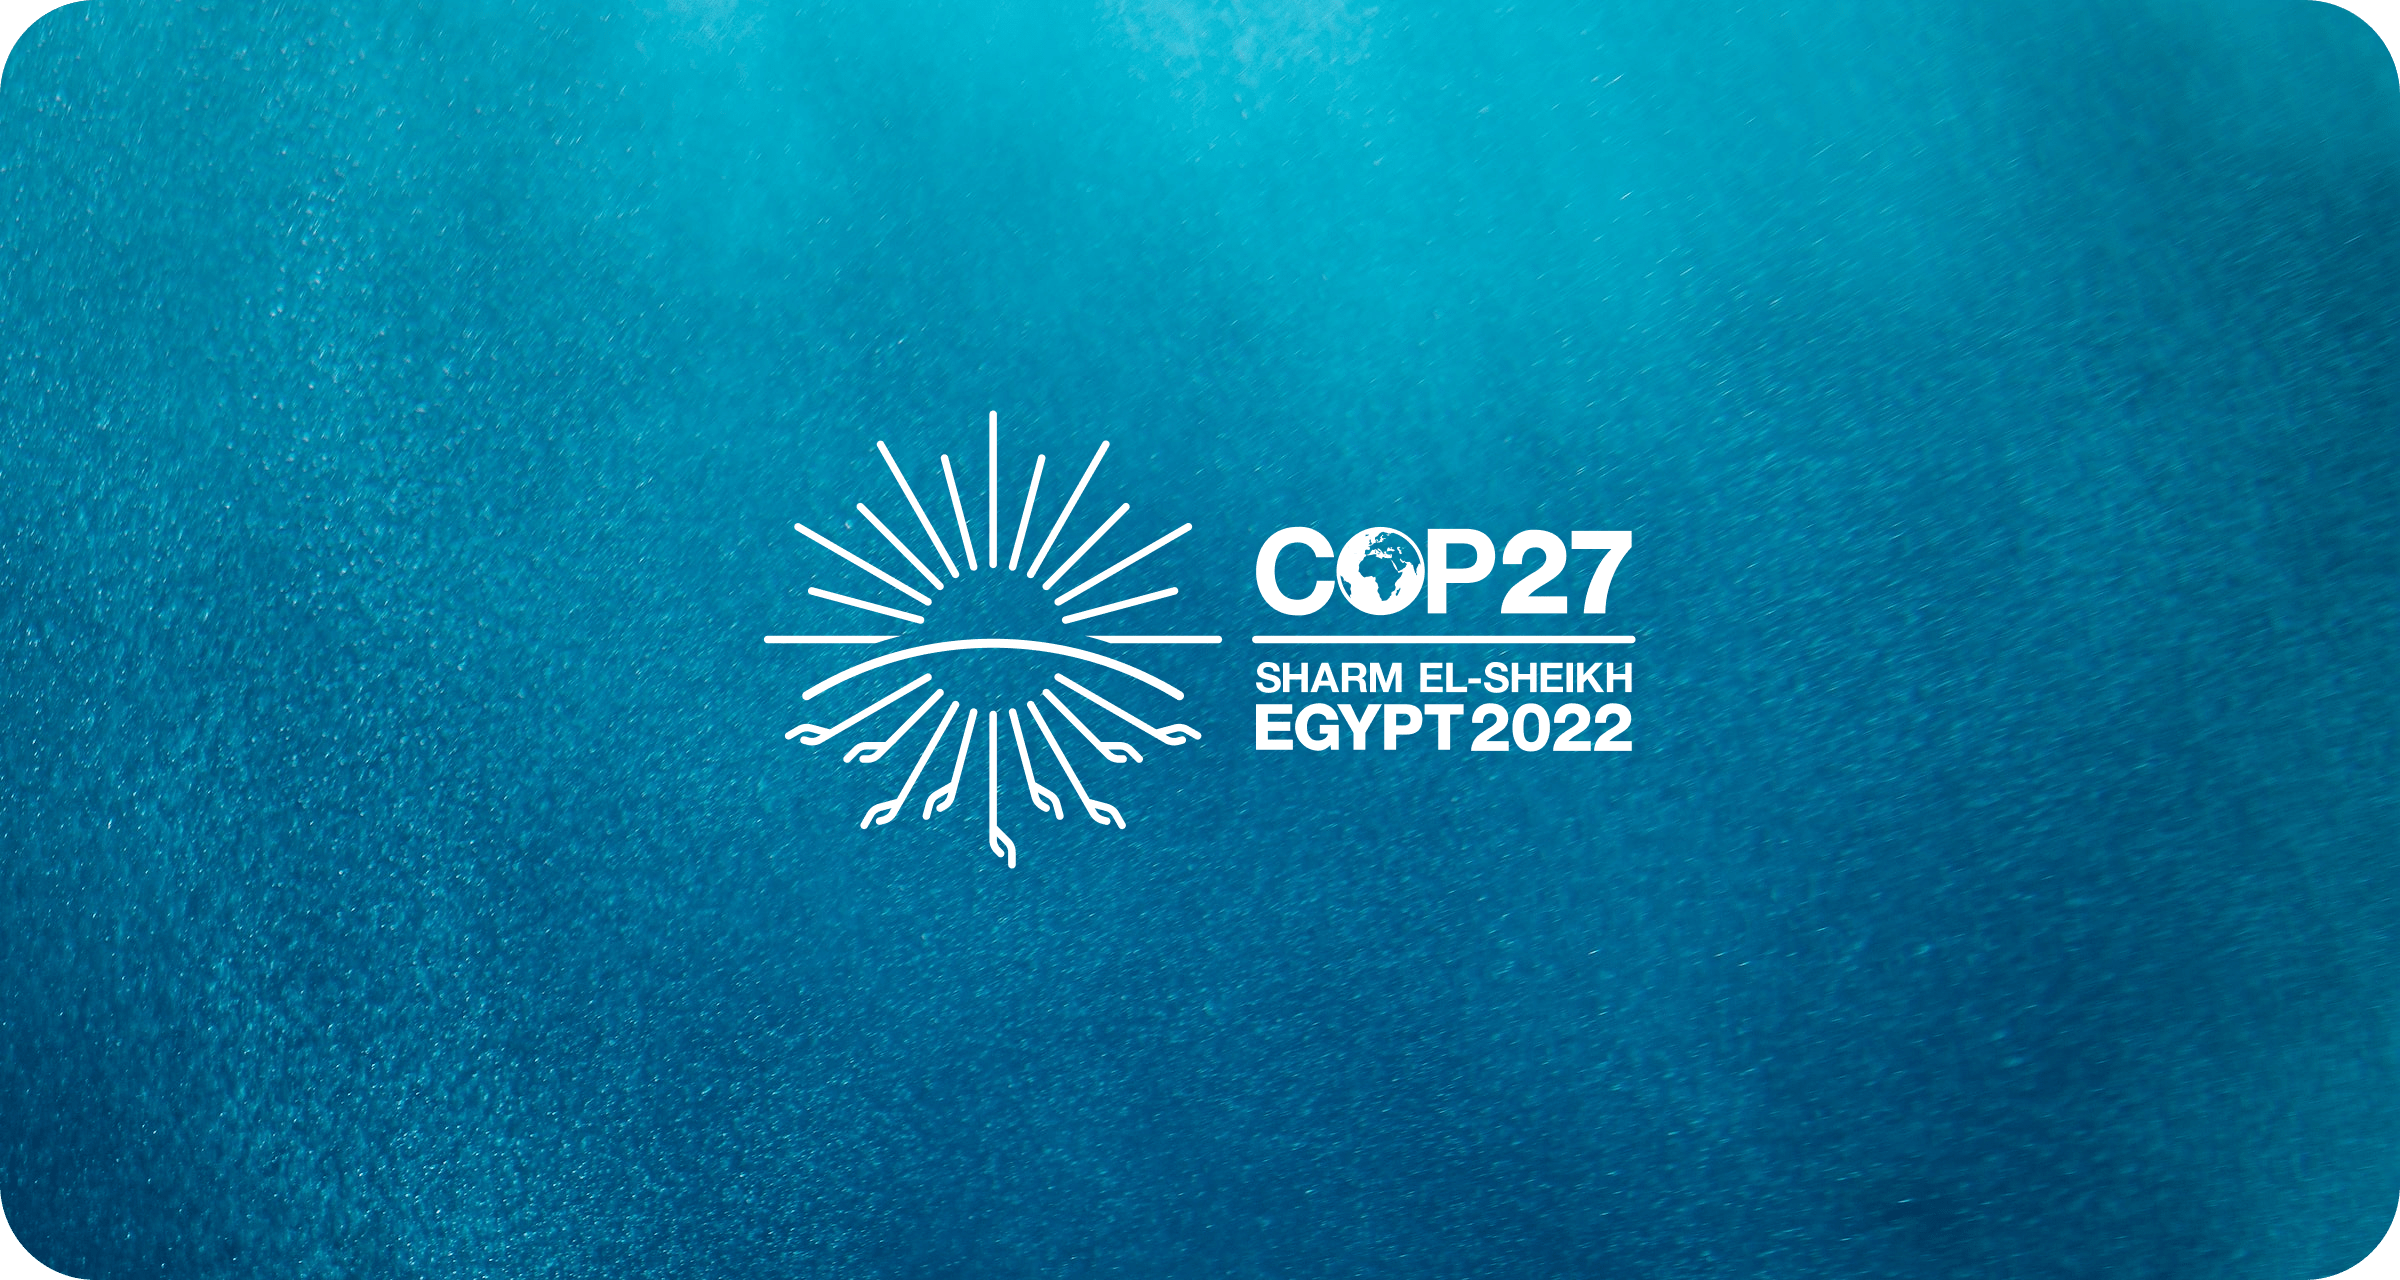 COP27: Sharm El-Sheikh Egypt 2022